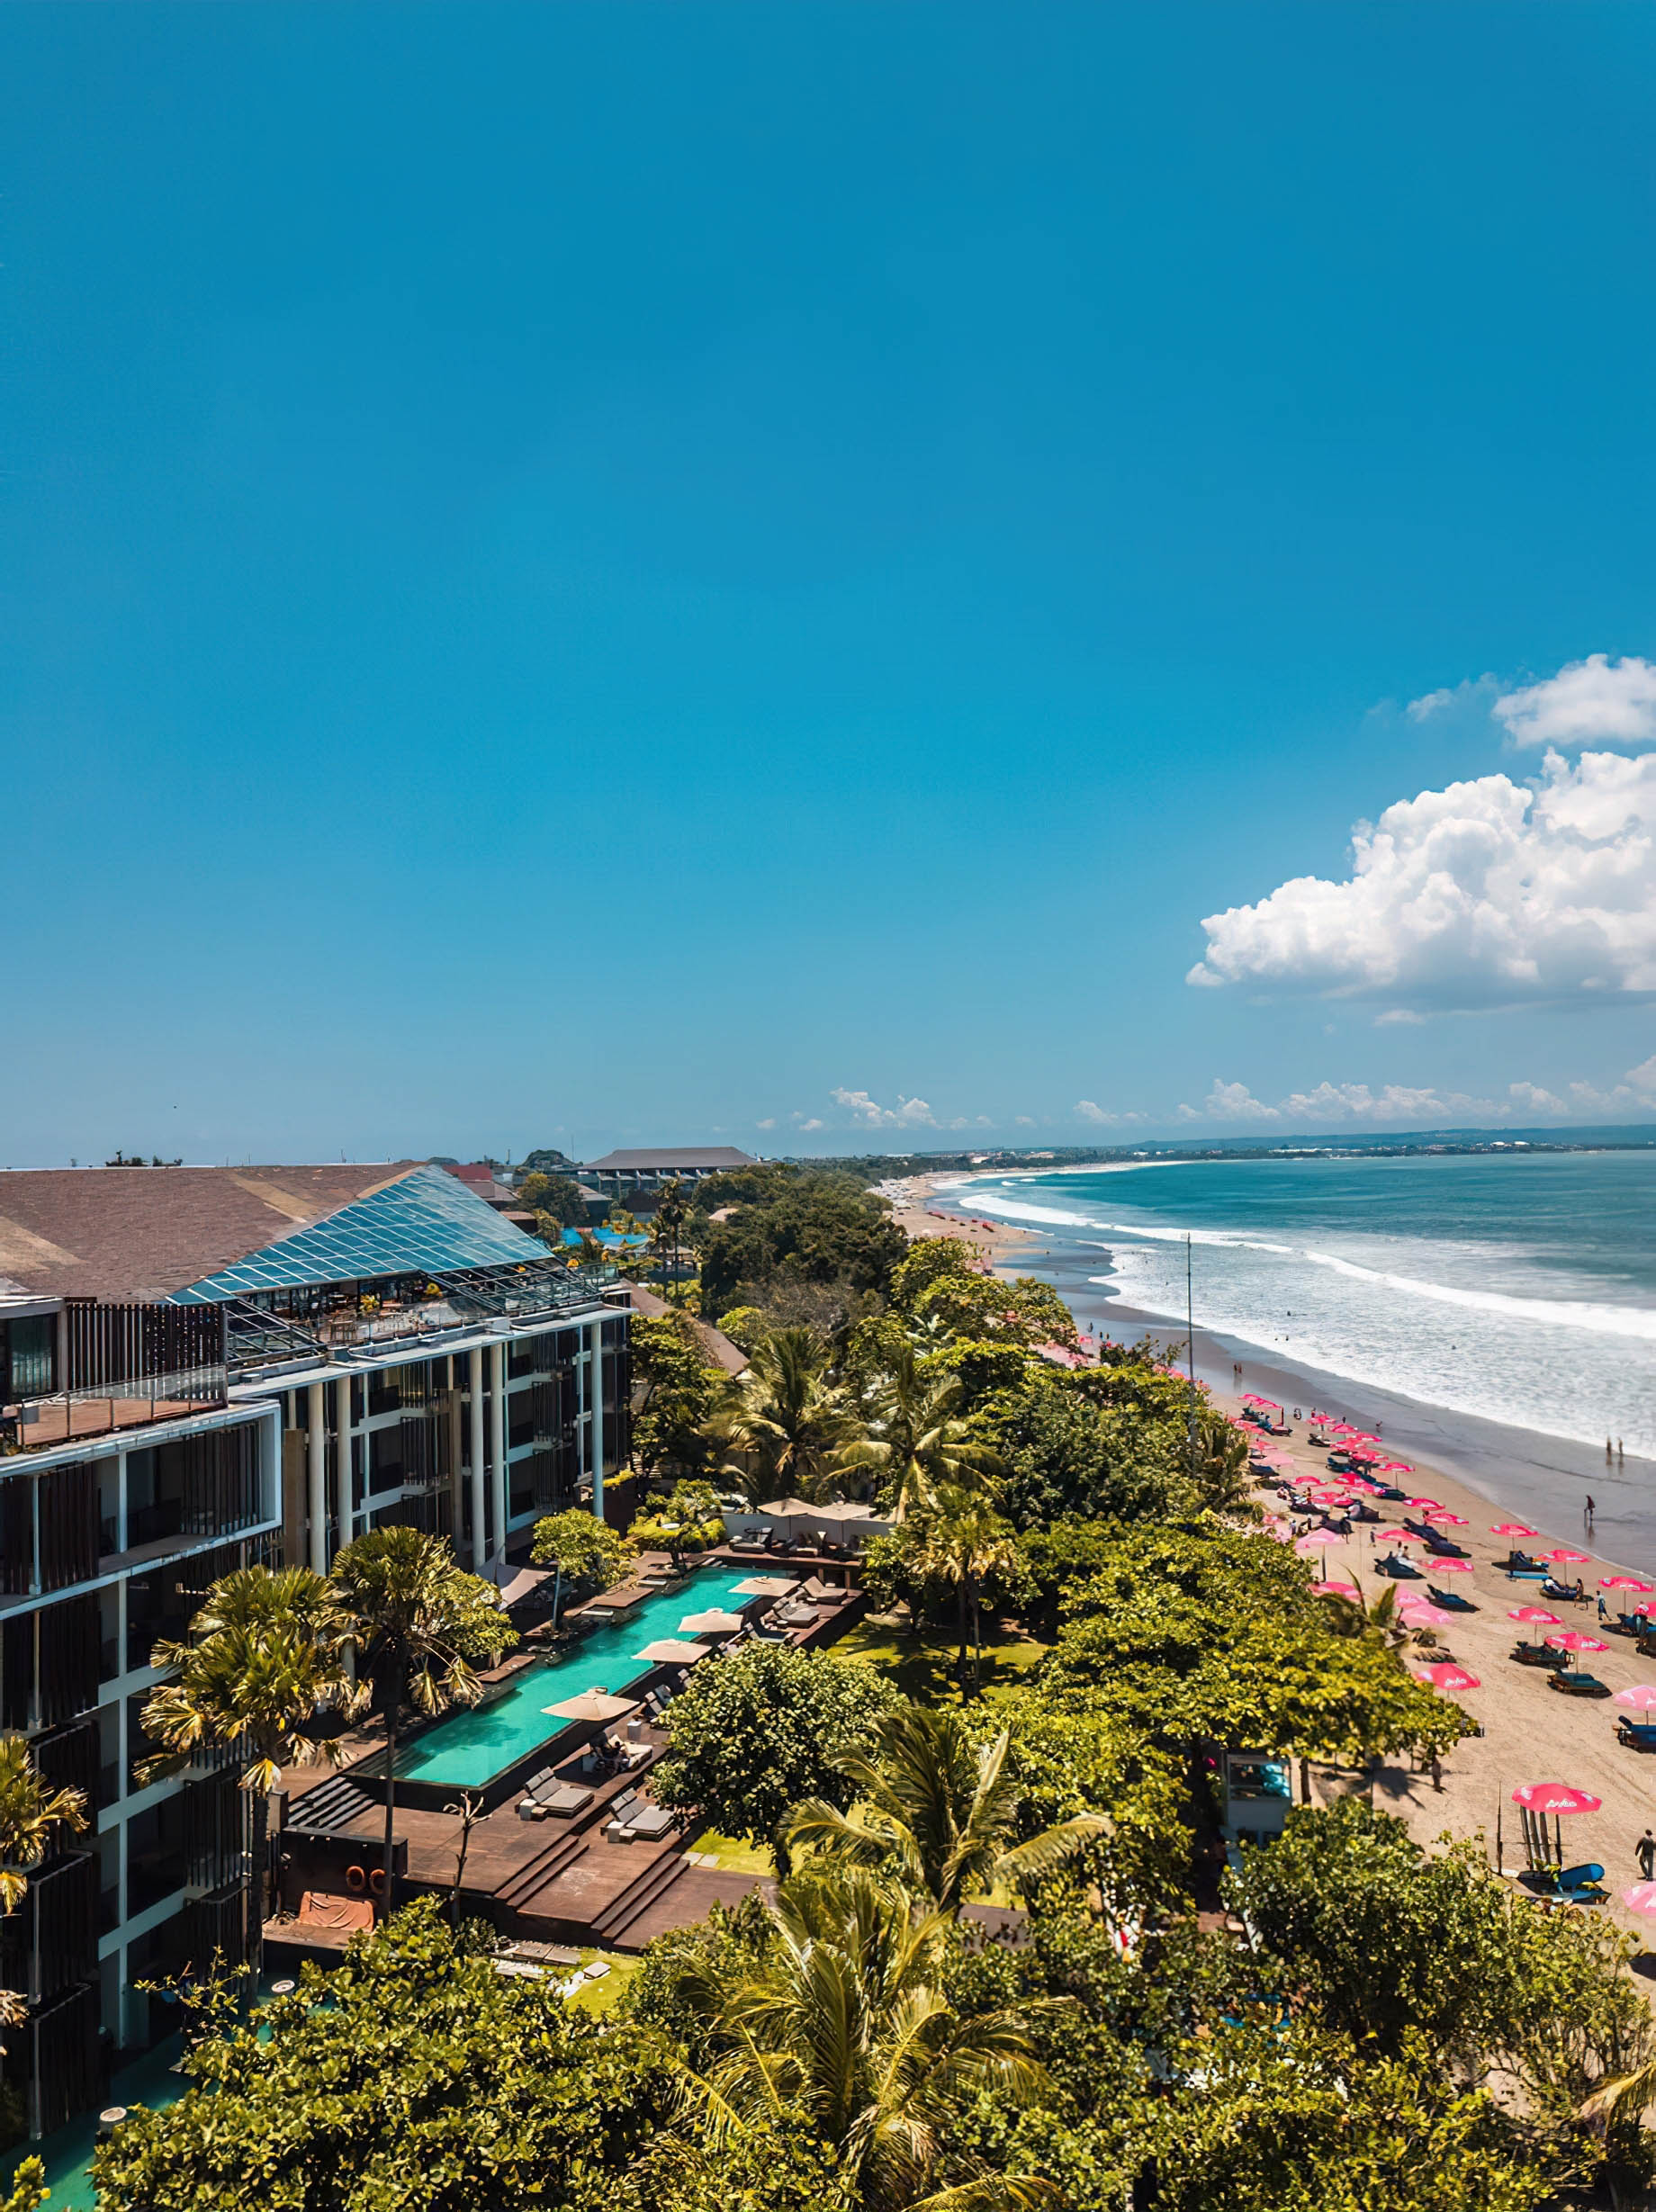 Anantara Seminyak Bali Resort – Bali, Indonesia – Aerial View